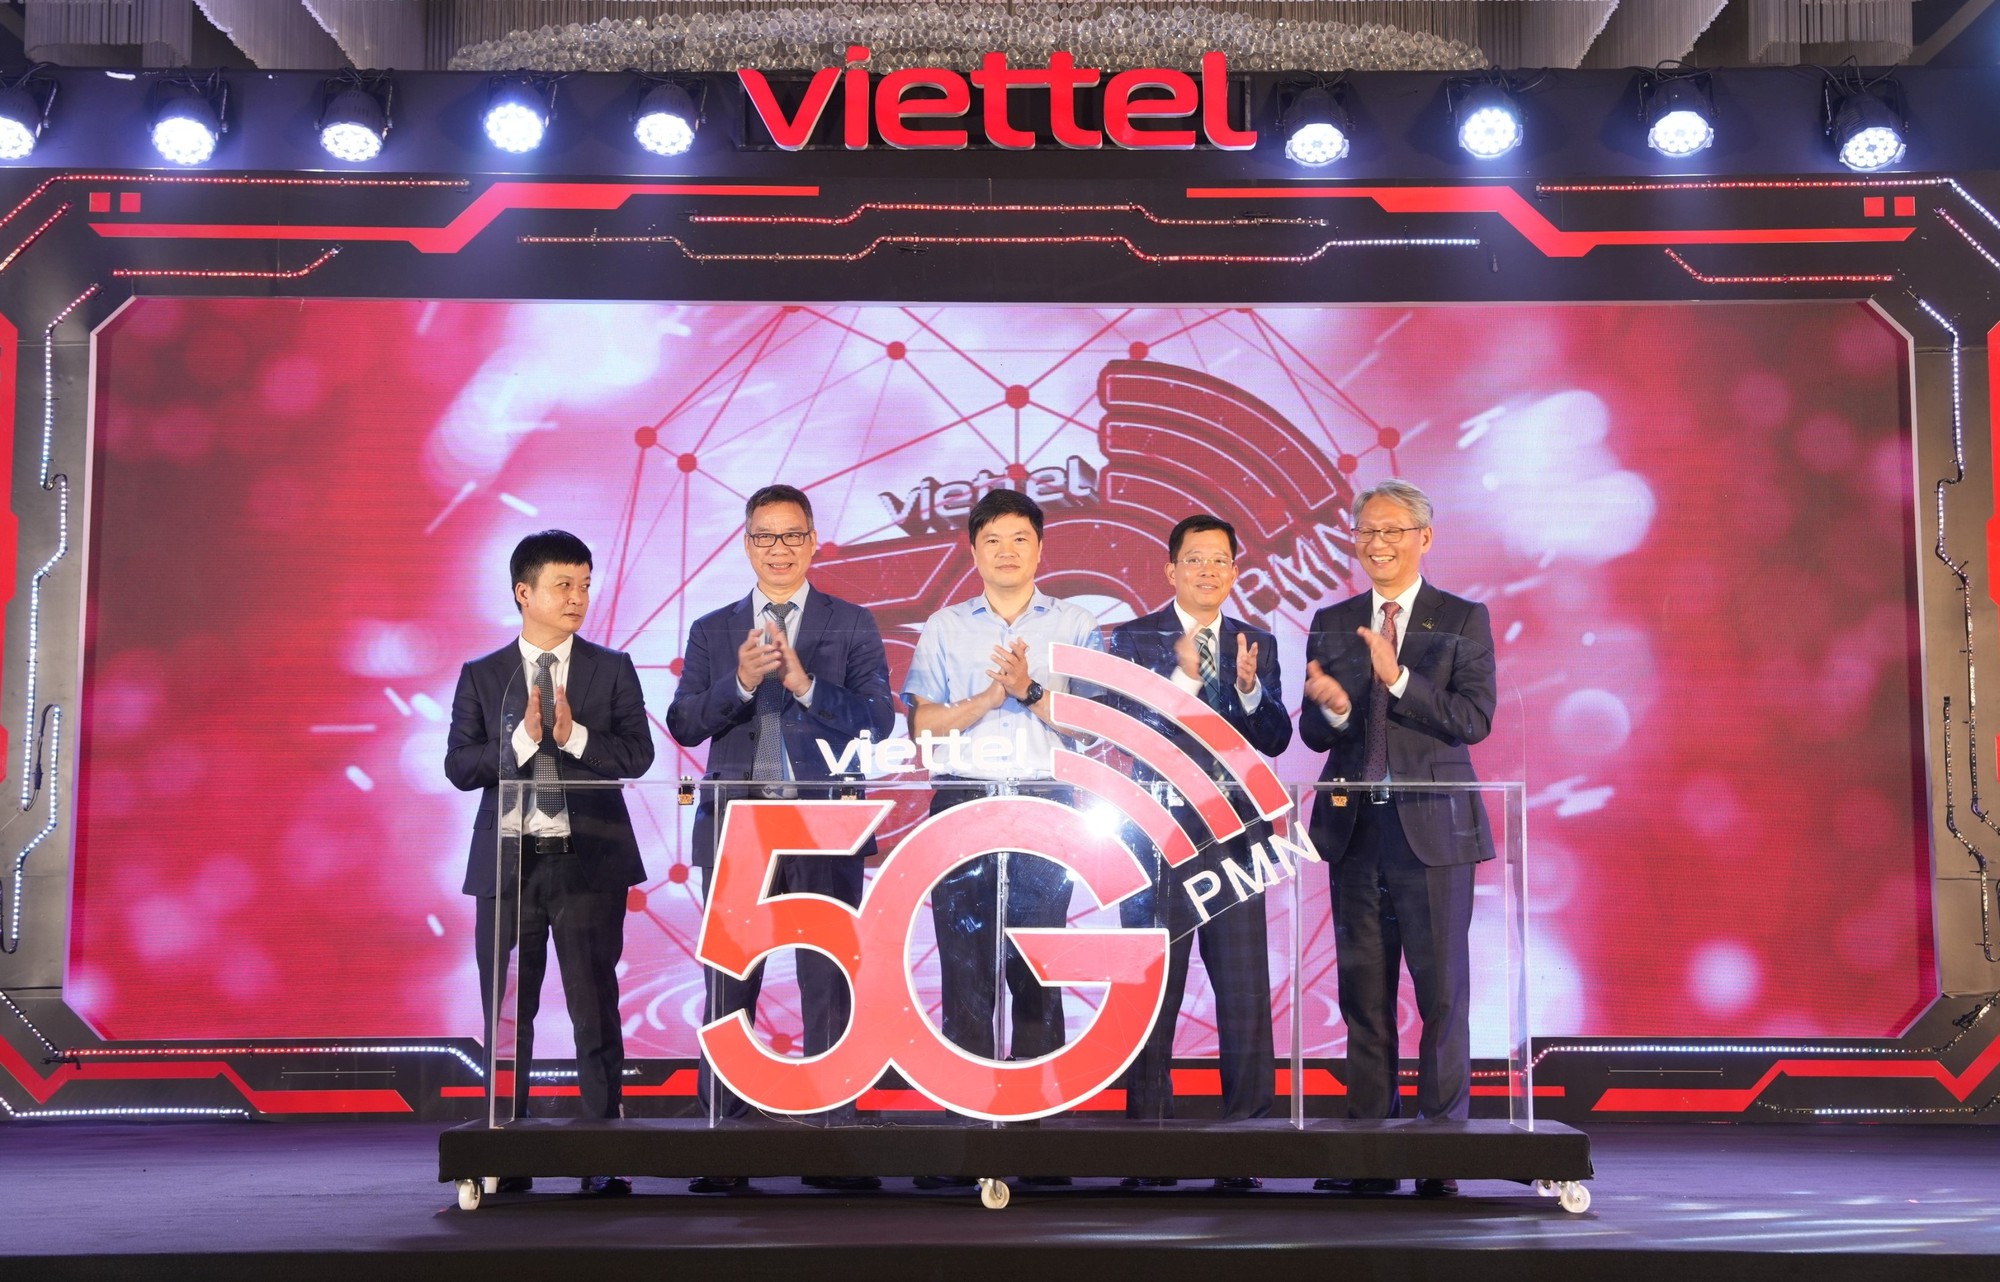 Tập đoàn Viettel công bố thử nghiệm thành công dịch vụ mạng di động 5G dùng riêng cho nhà máy Pegatron tại Hải Phòng.